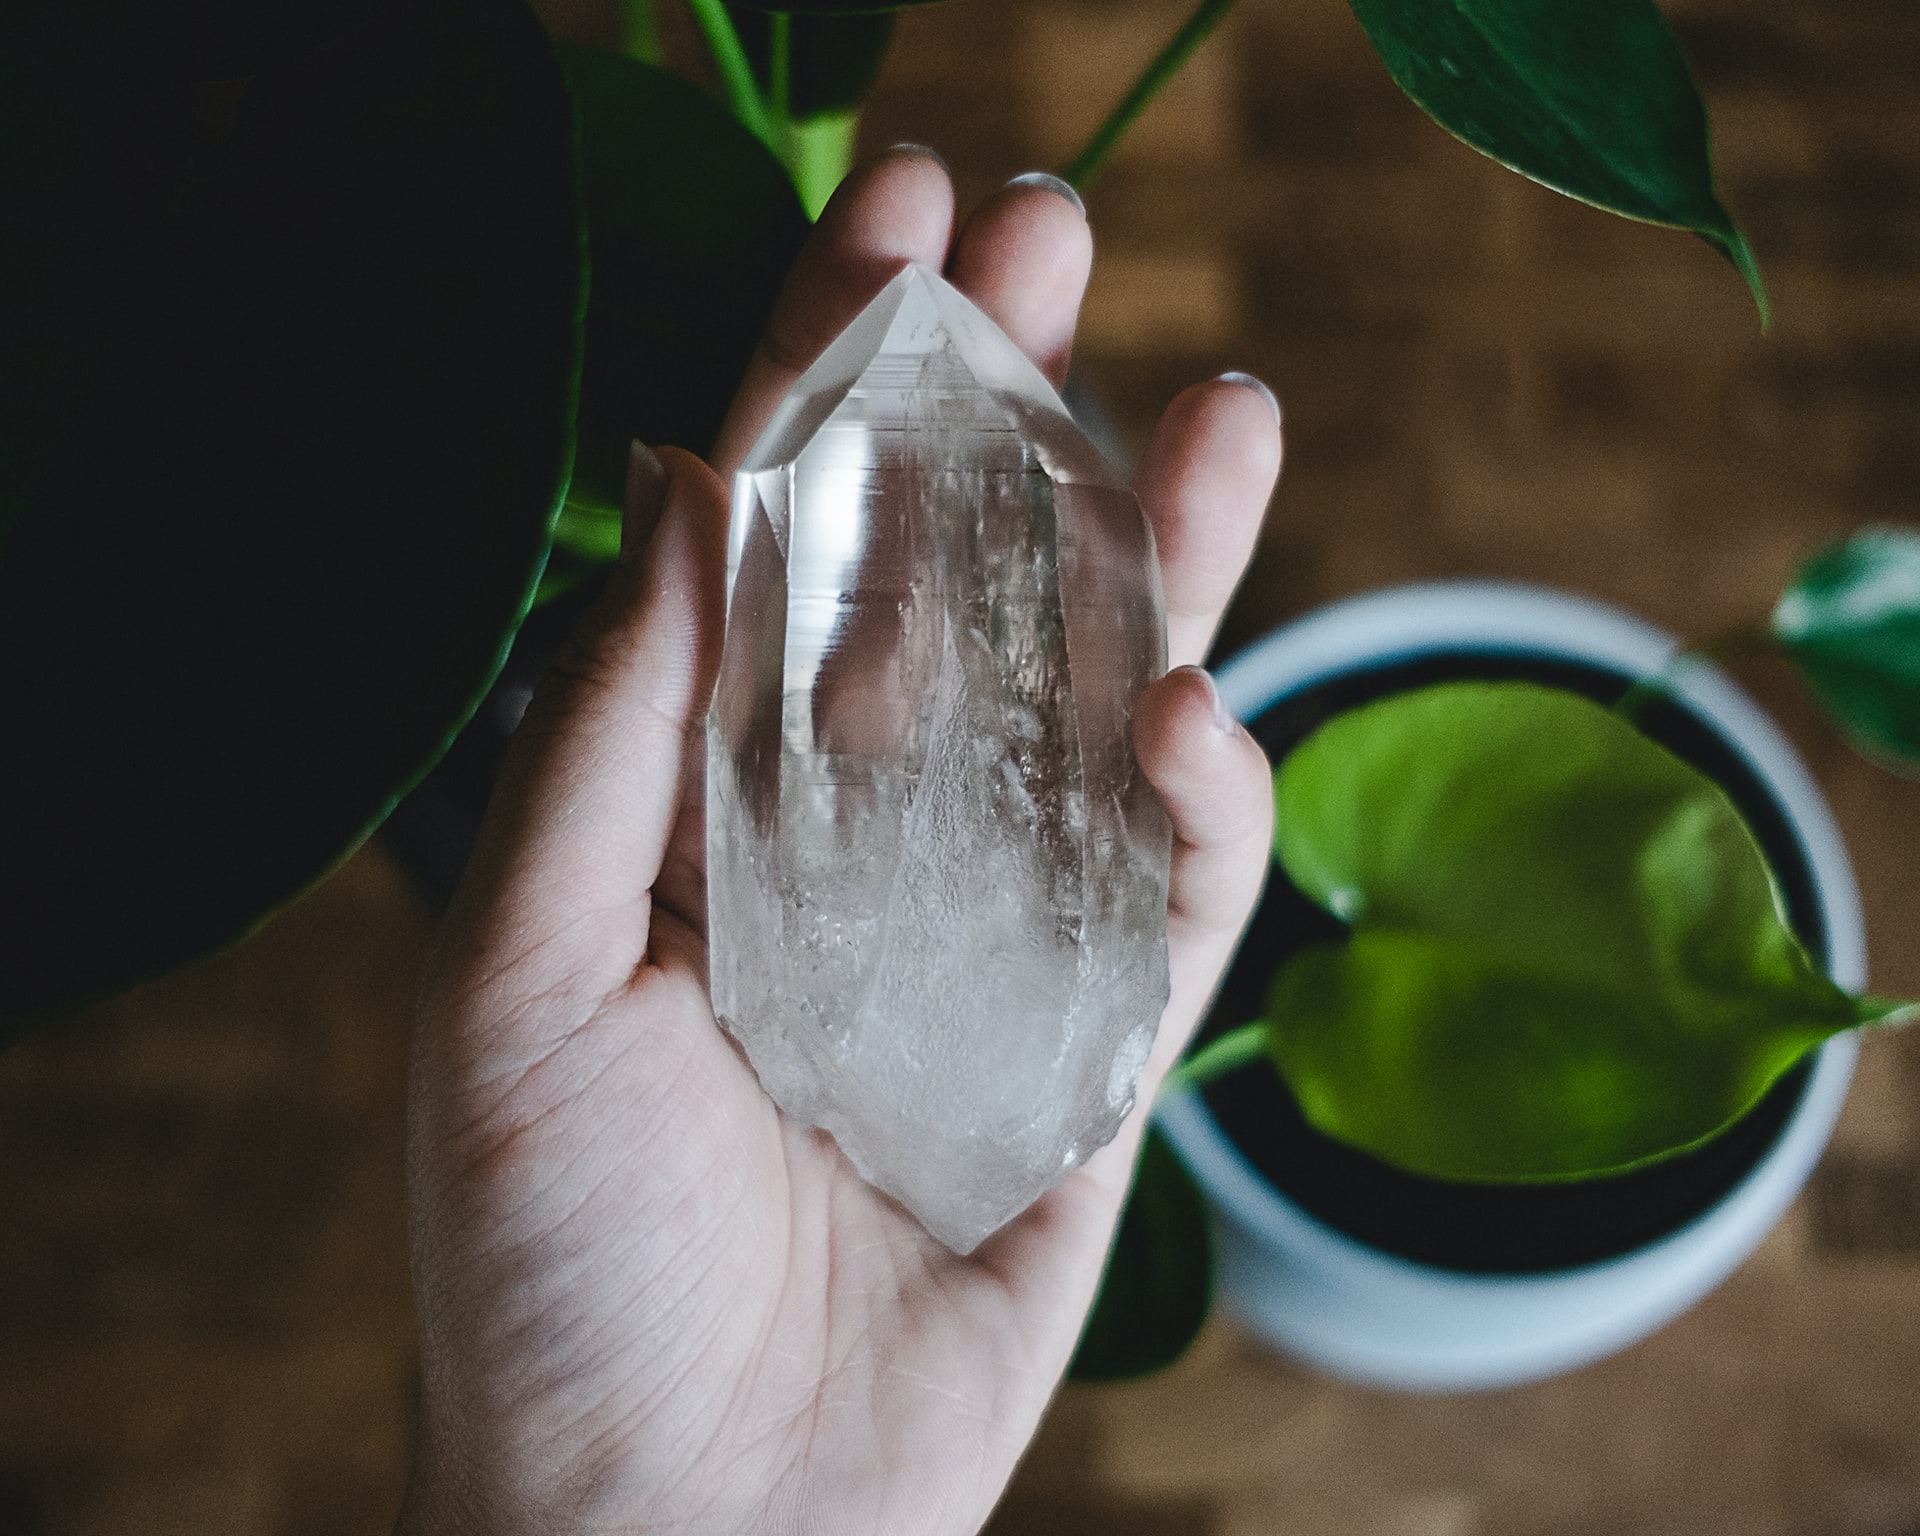 Krystaller kan bruges til spirituel udvikling – Hvordan kan man det?